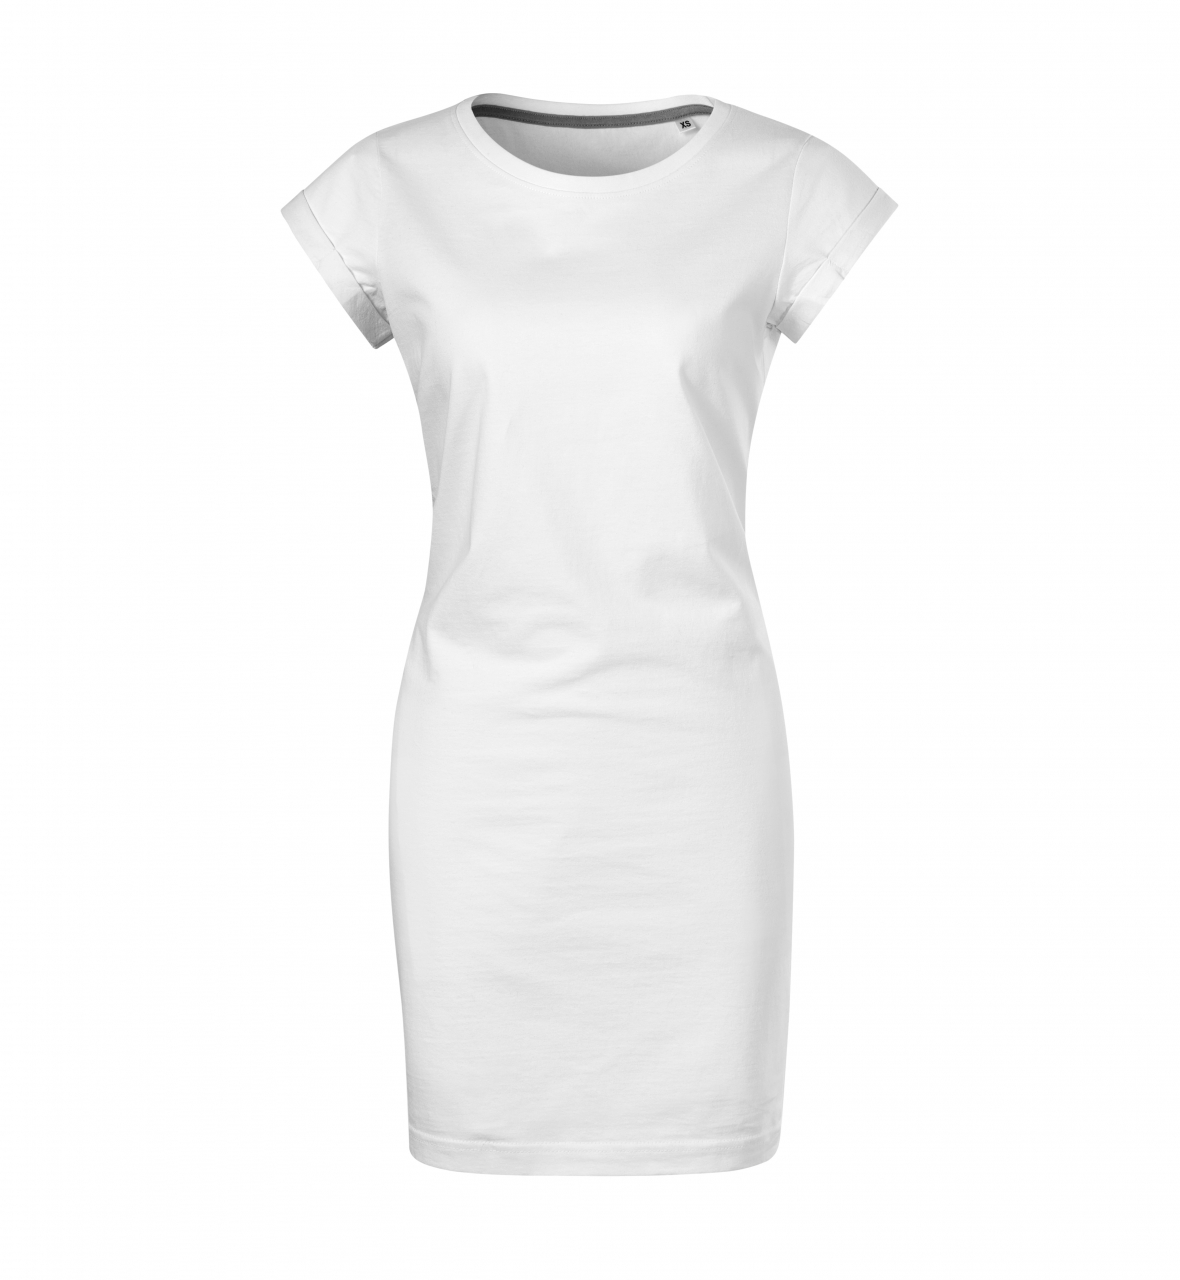 Šaty dámské Malfini Freedom - bílé, XS